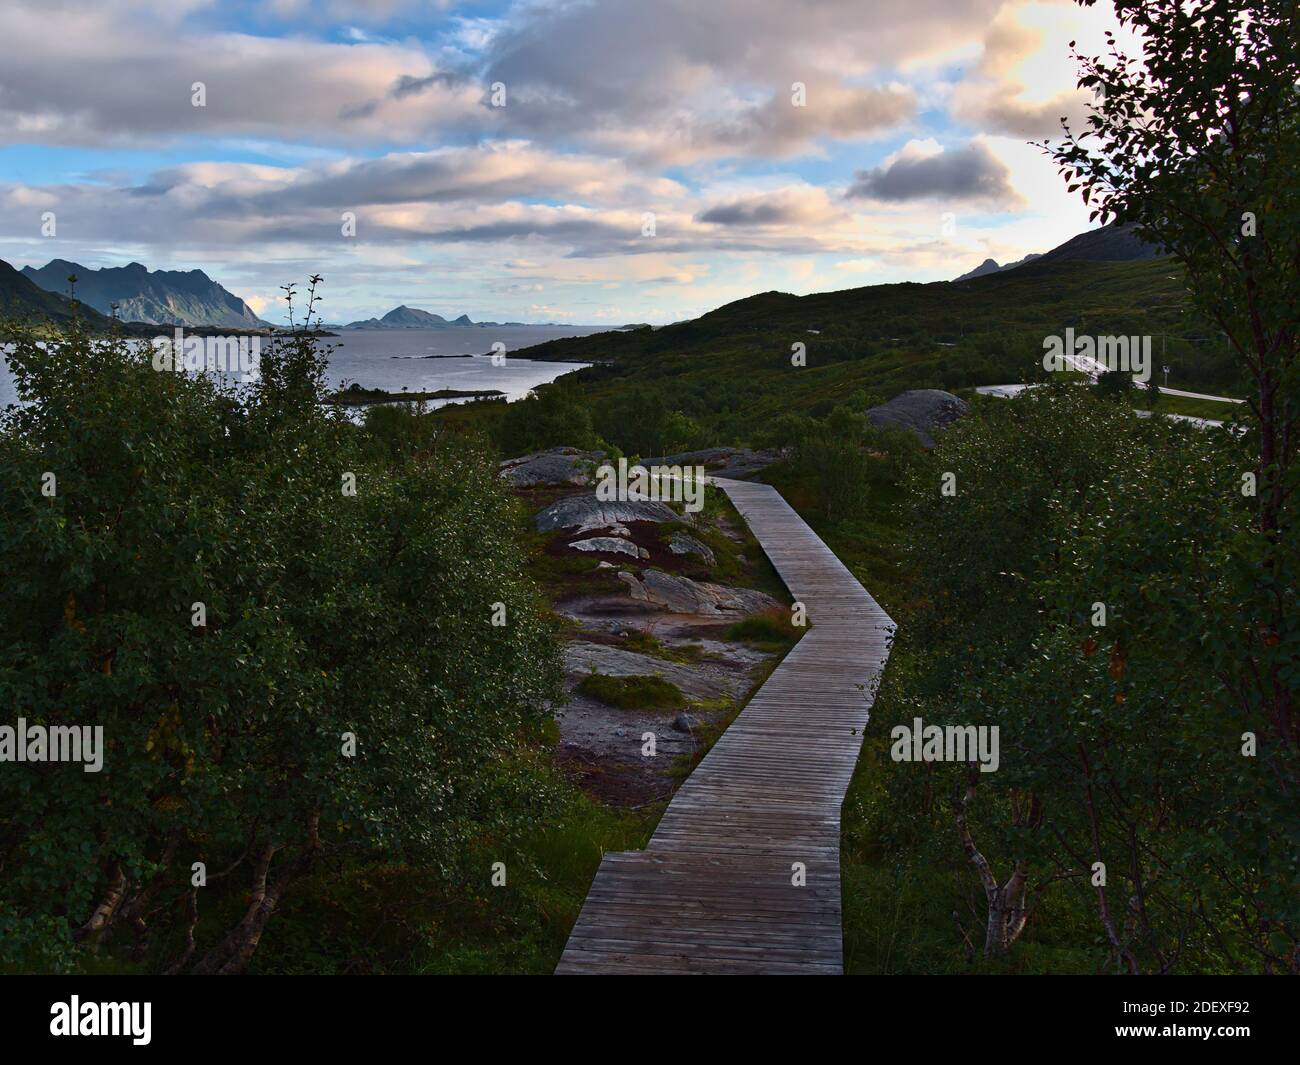 Hölzerne Fußgängerbrücke führt zu einem Aussichtspunkt an der Küste des Austnesfjords, einem Fjord auf der Insel Austvågøy, Lofoten im Norden Norwegens mit Bäumen. Stockfoto